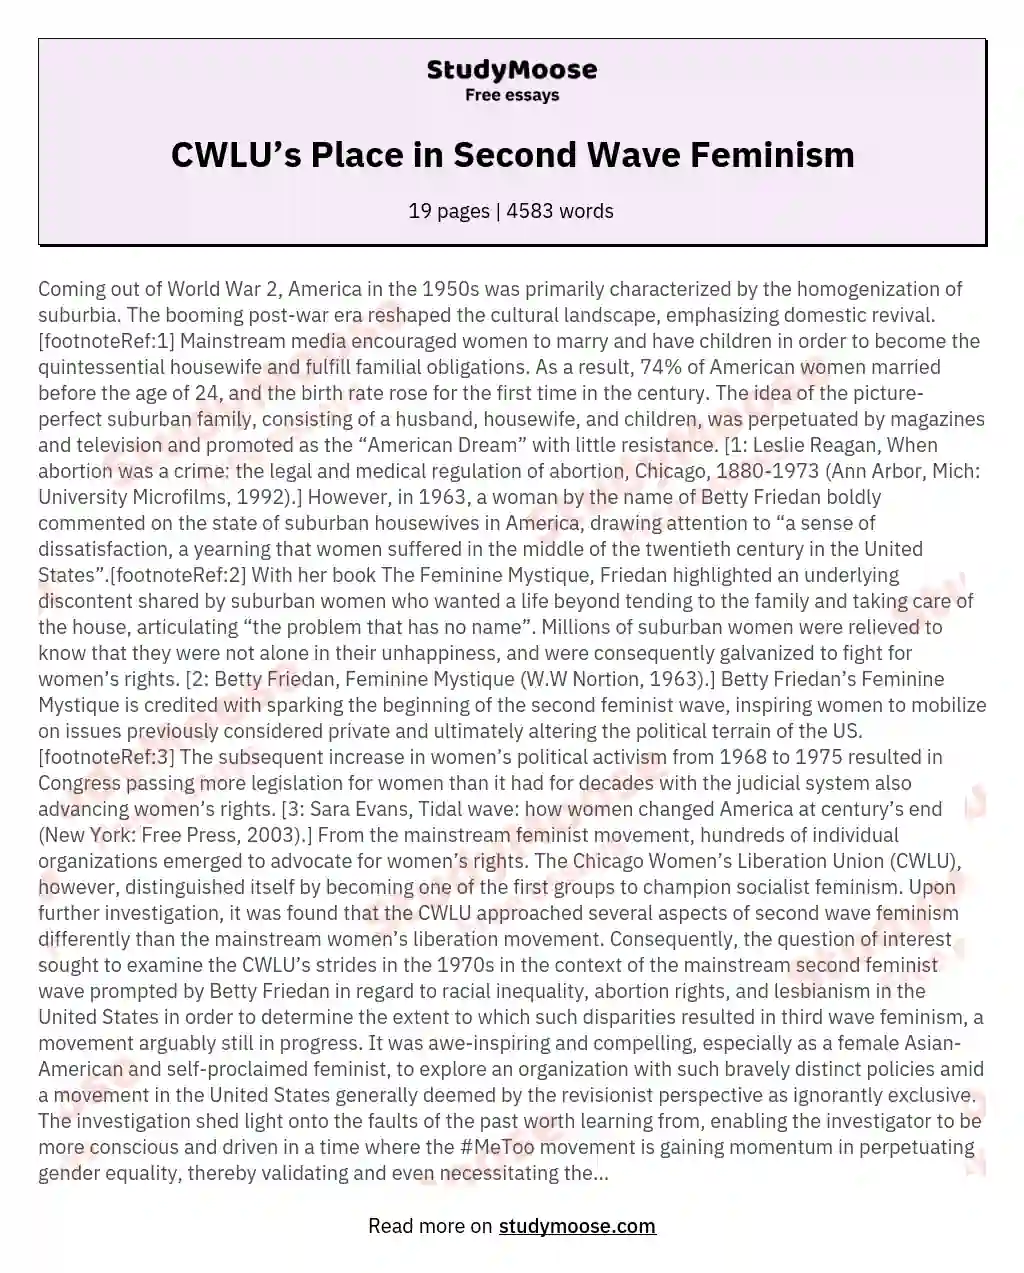 CWLU’s Place in Second Wave Feminism essay